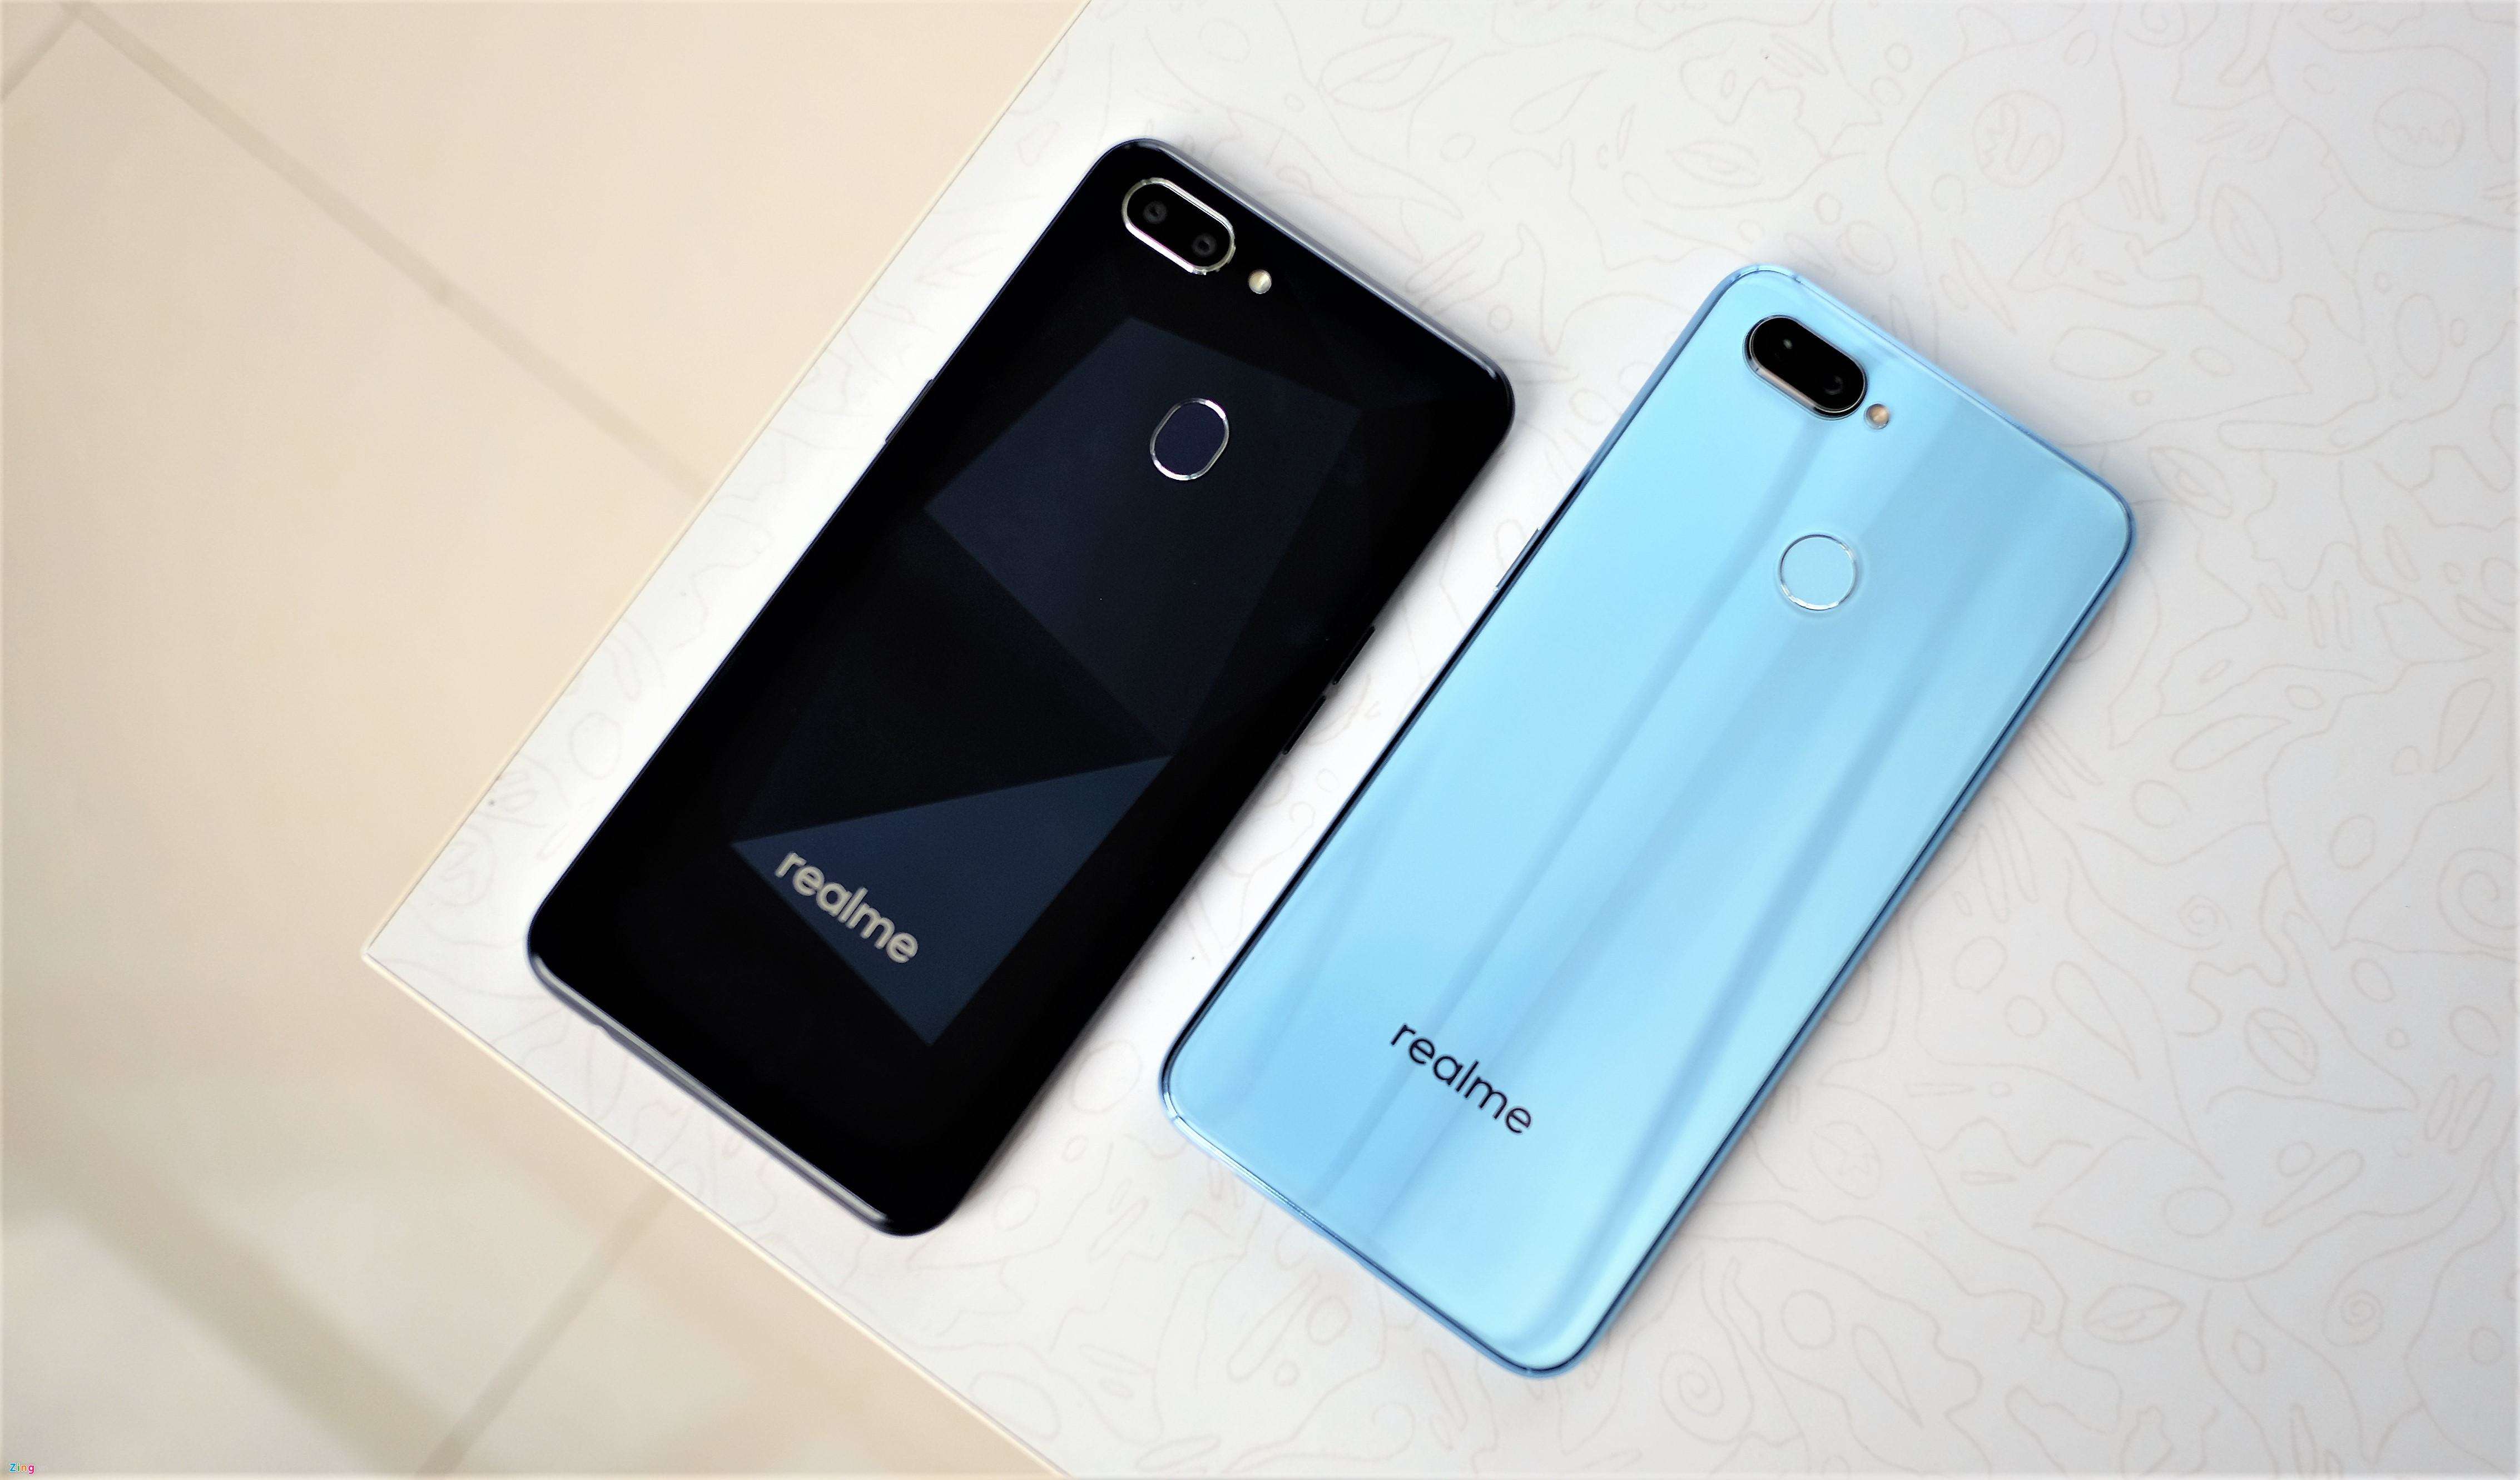 Realme 3 स्मार्टफोन की टीजर जारी हुआ, जल्द लाँच हो सकता है ये स्मार्टफोन